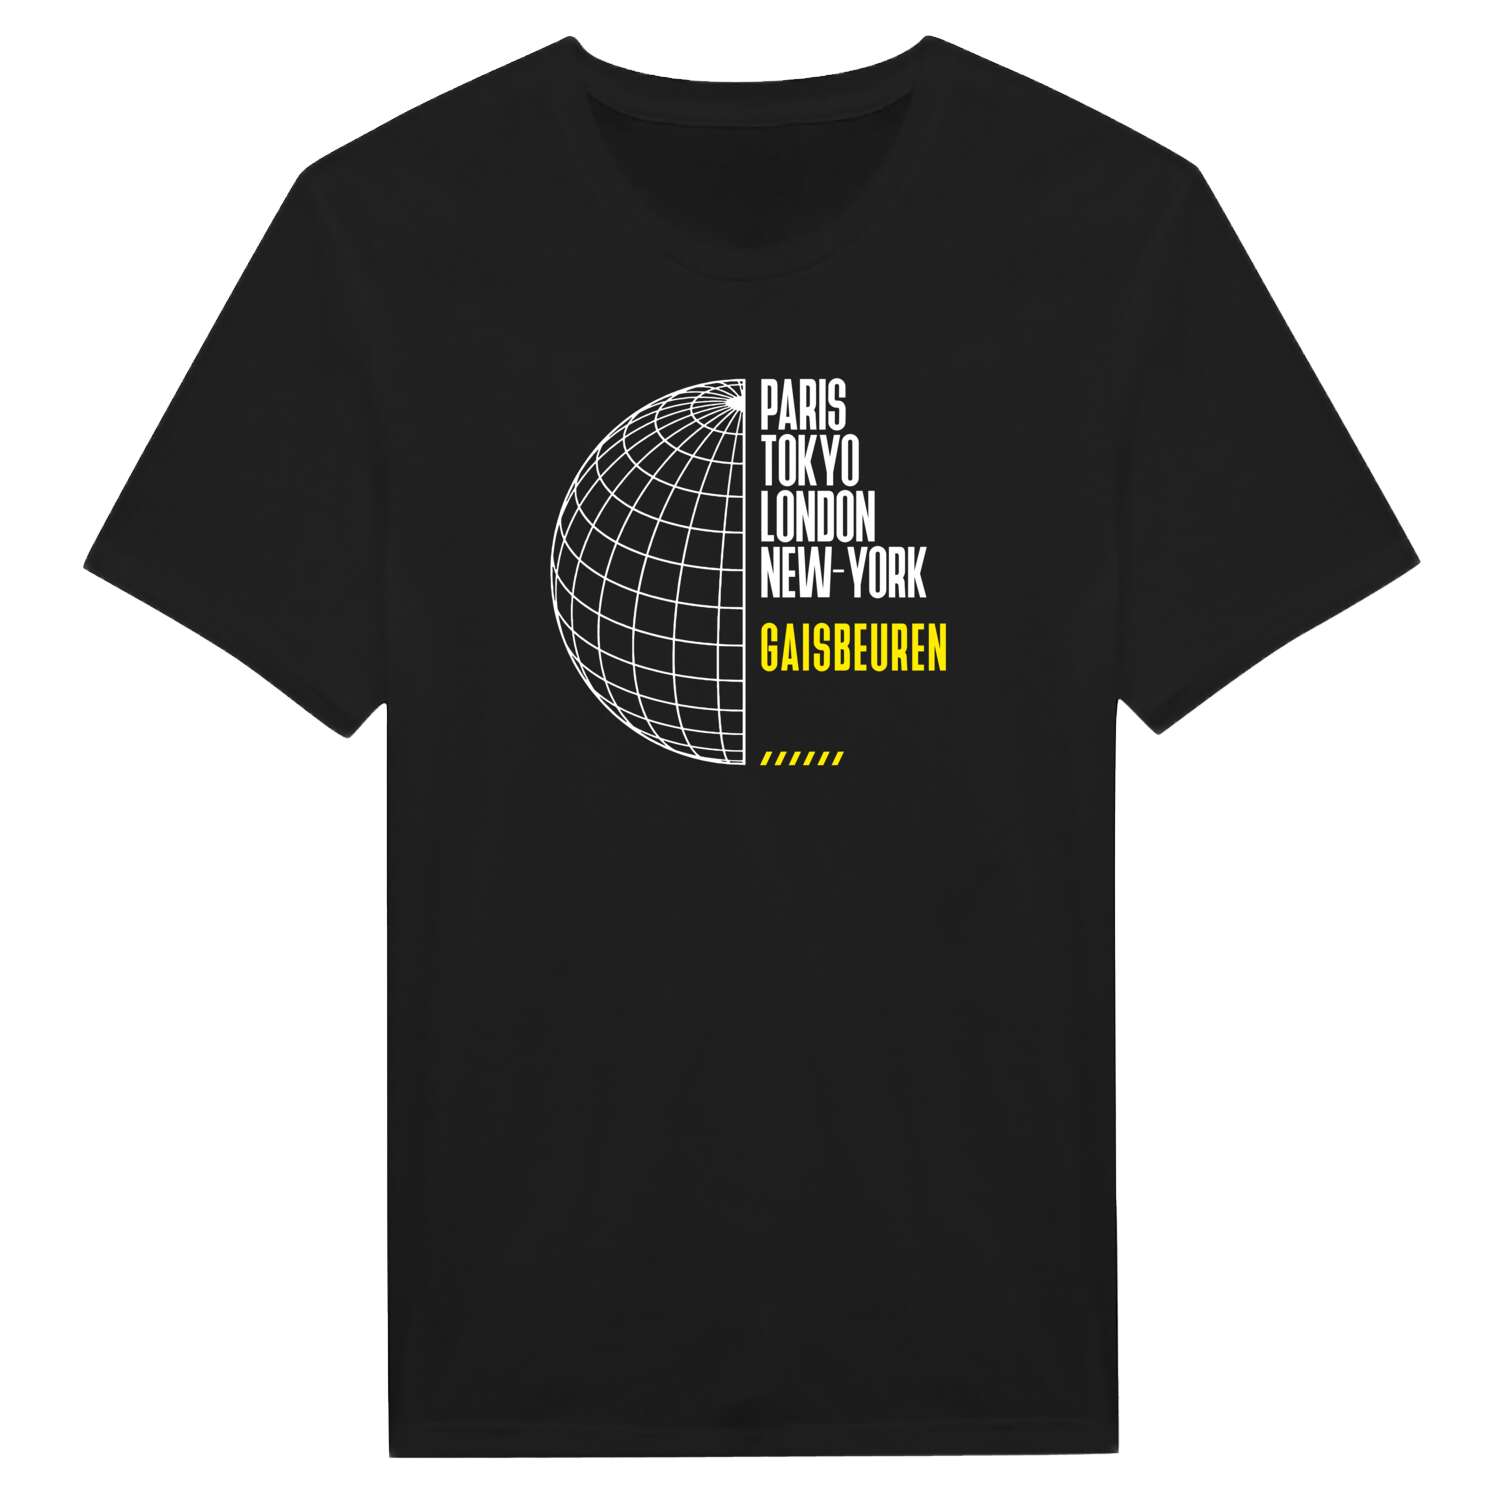 Gaisbeuren T-Shirt »Paris Tokyo London«